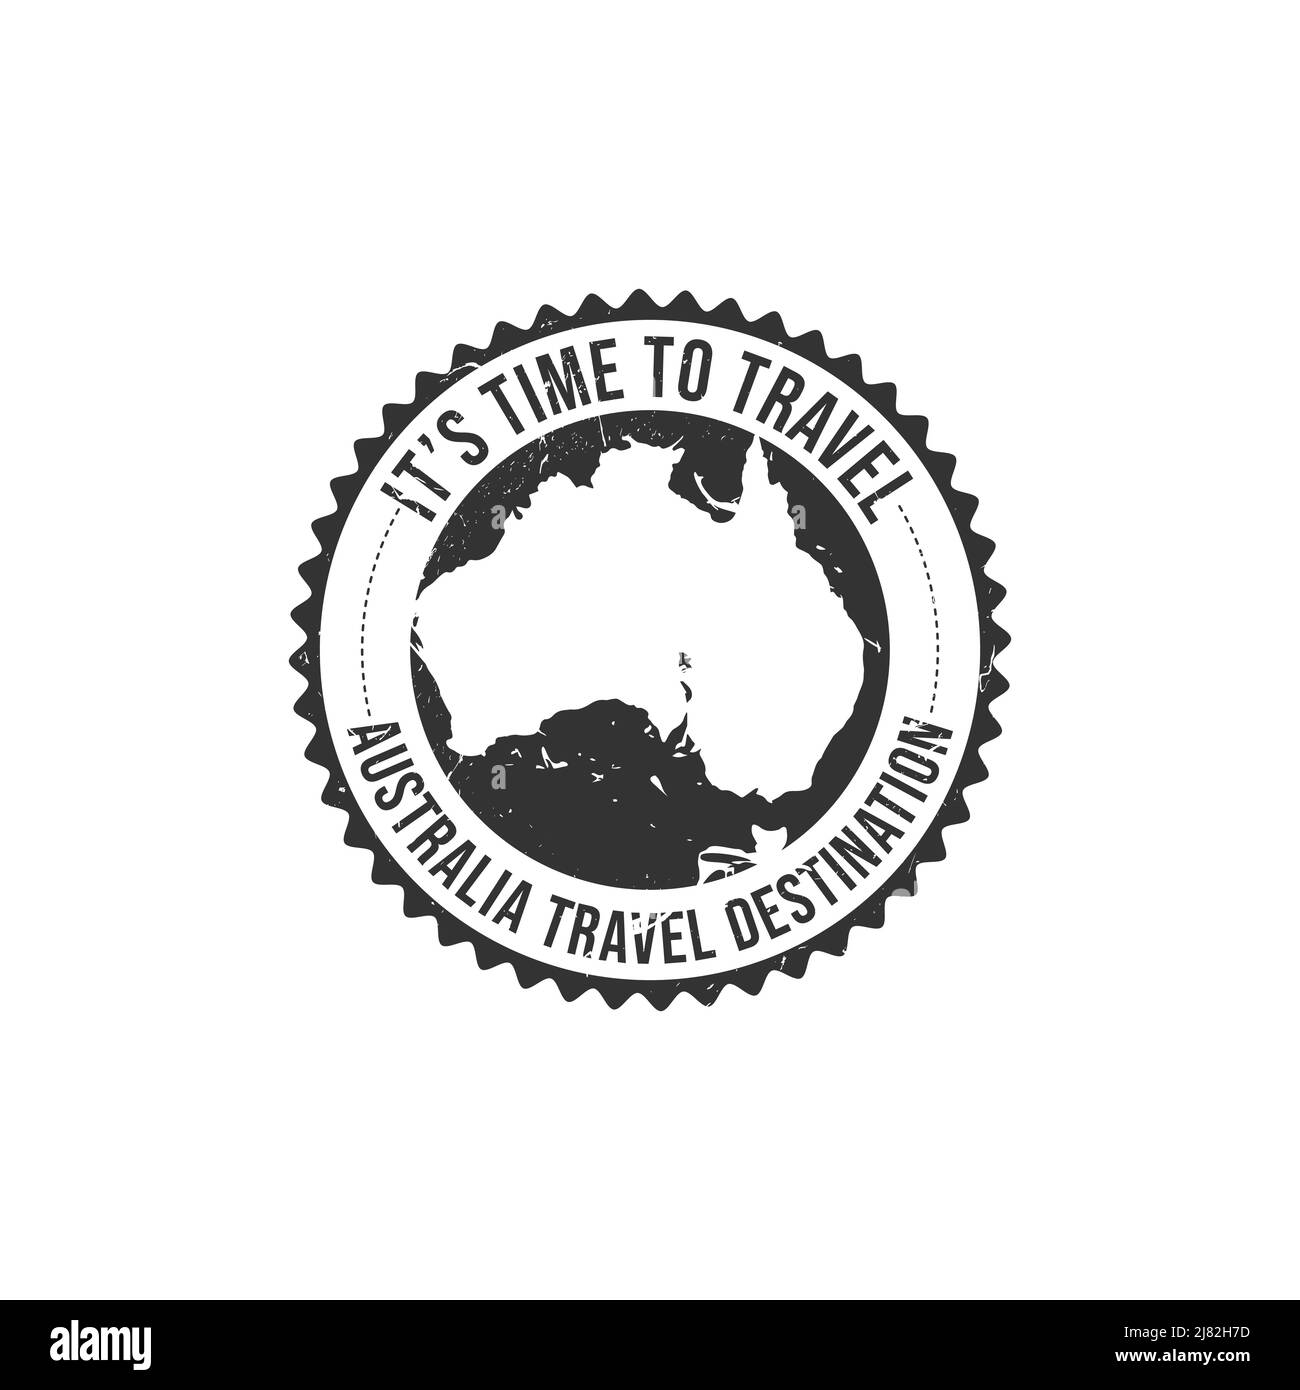 Grunge Gummistempel mit dem Text Australien Icon Karte Reise Ziel in der Marke geschrieben. Australien Reiseziel Grunge Stempel Stock Vektor